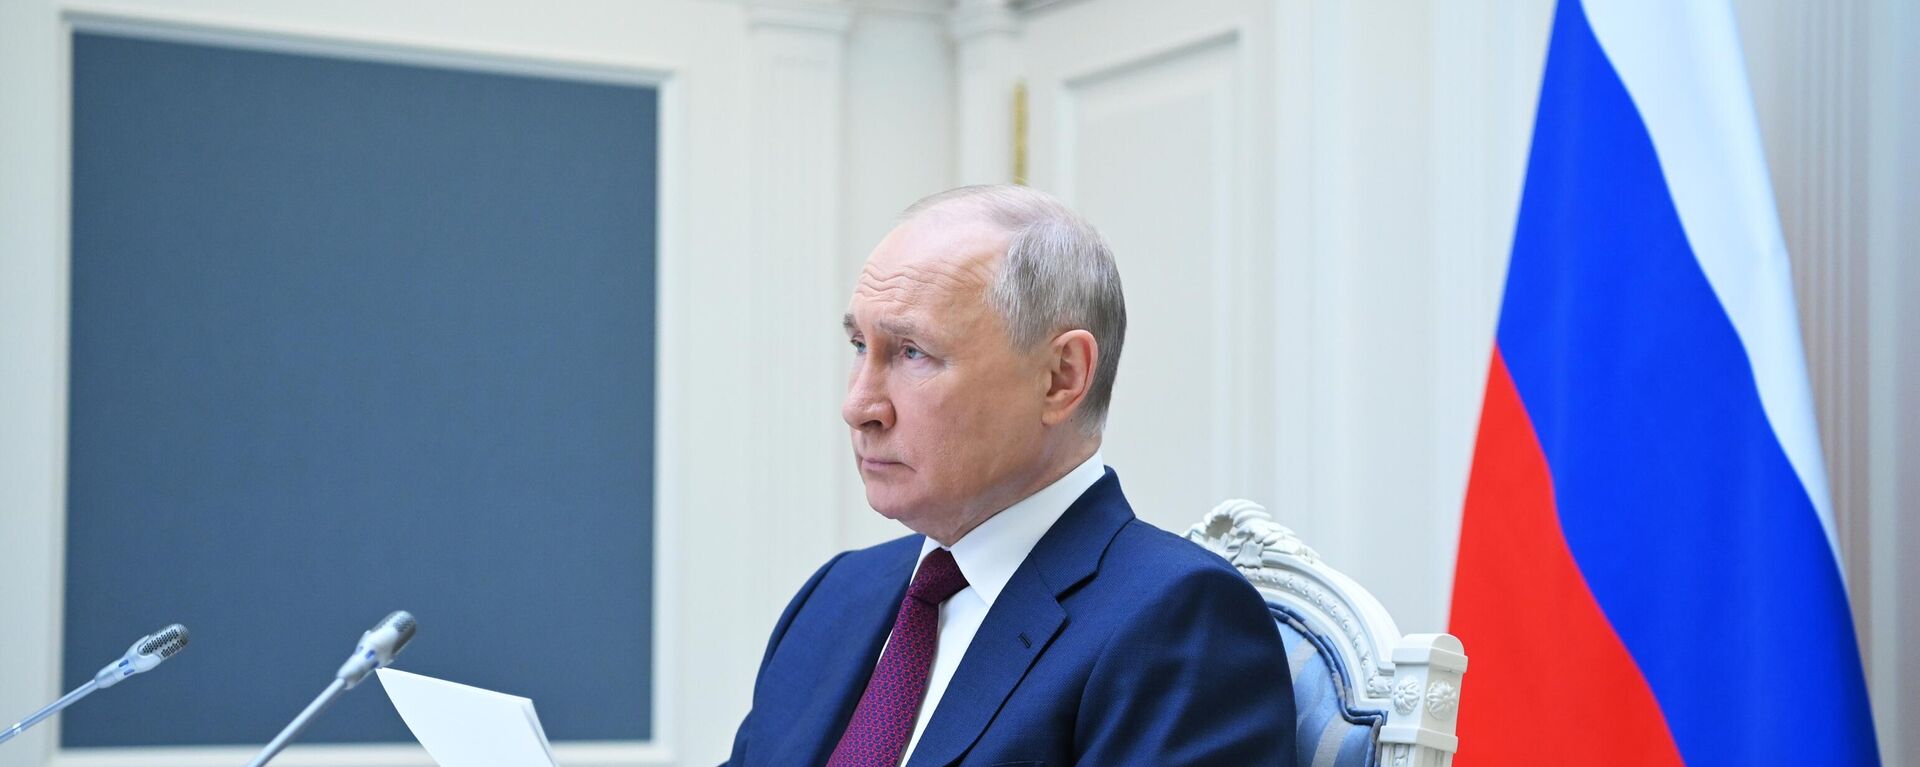 Vladimir Putin takes part in SCO meeting - Sputnik International, 1920, 24.07.2023